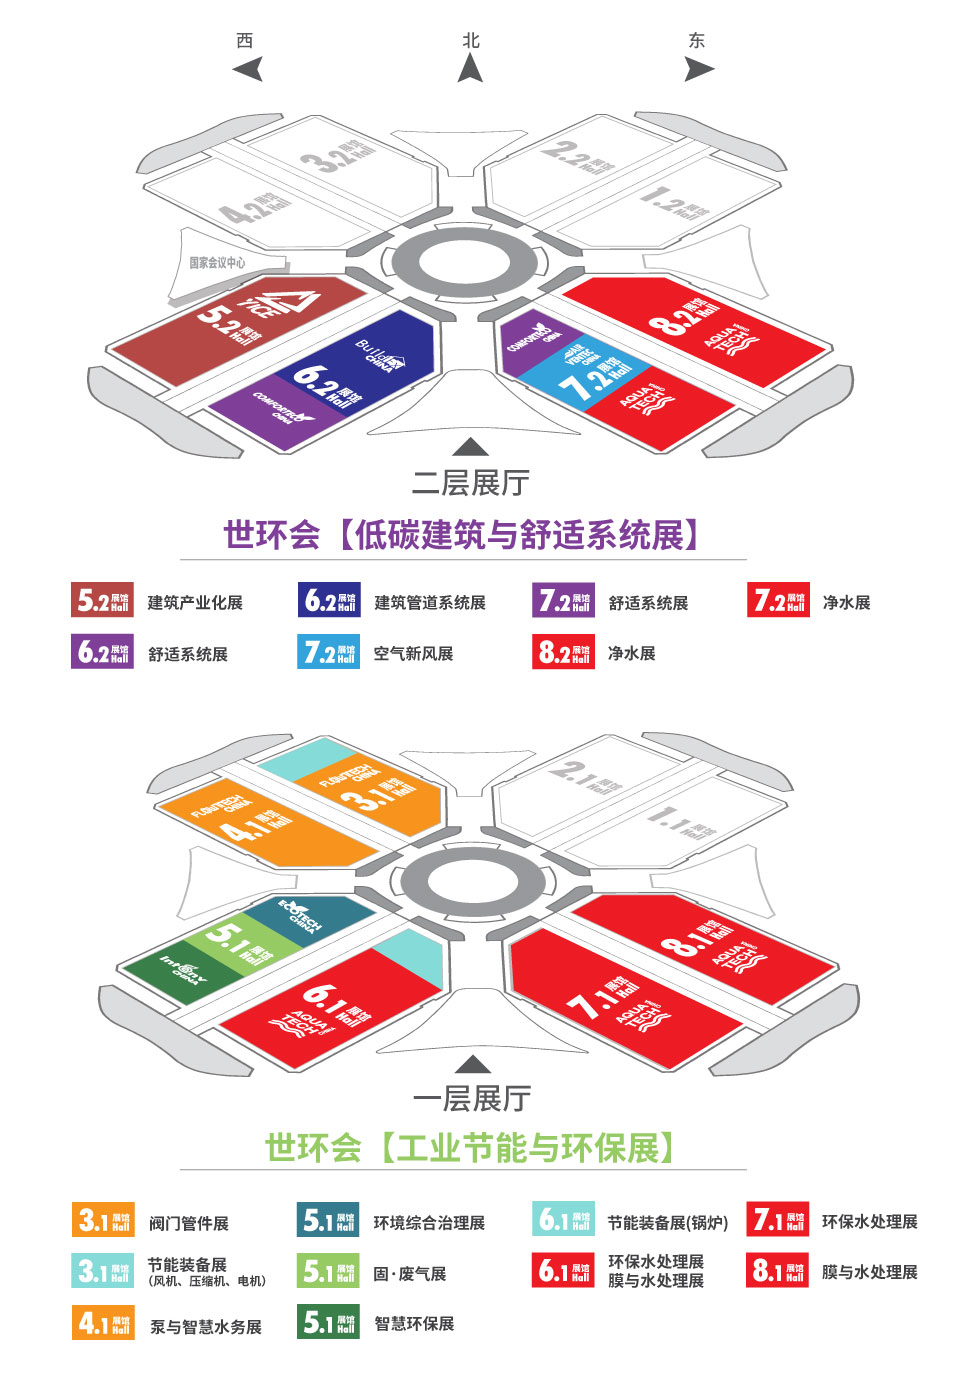 展馆分布-上海空气新风展 AIRVENTEC CHINA 2022.6.8-10新风系统 通风设备 空气净化